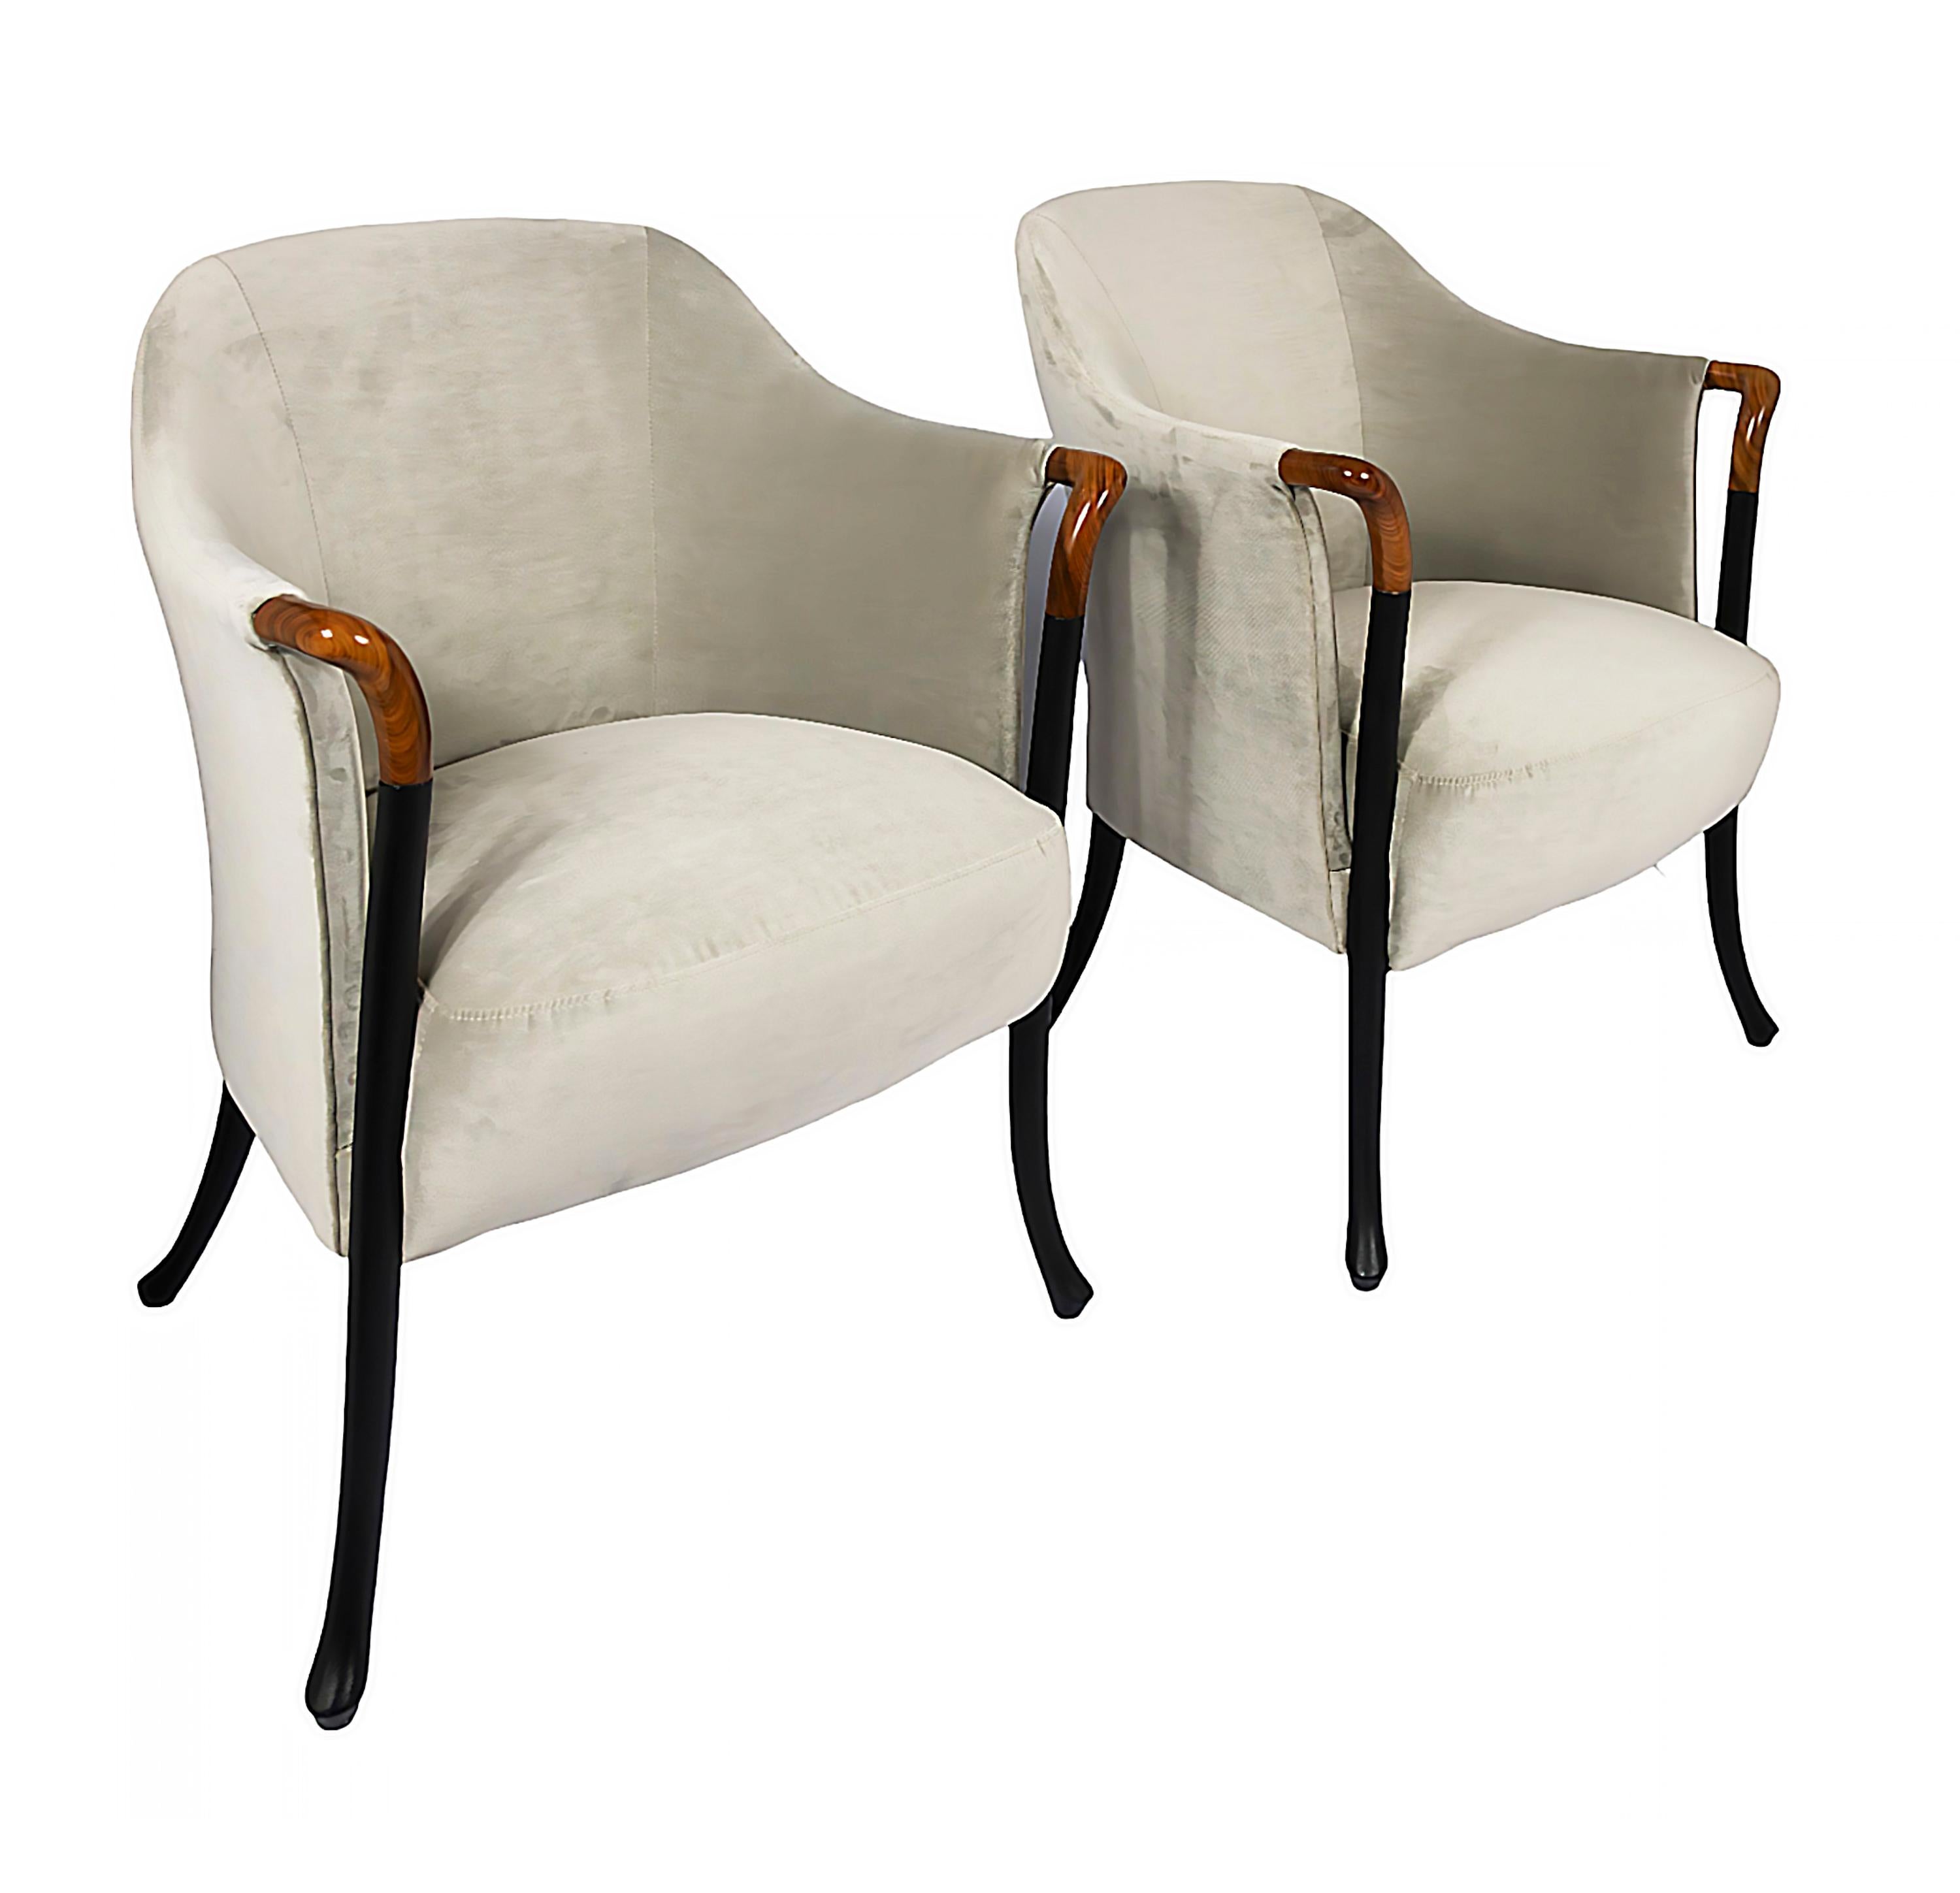 Ein Paar Vintage-Sessel Progetti, entworfen von Umberto Asnago.
Herstellungsdatum ca. 1980 von Giorgetti, Italien.
Etikettiertes Textil auf der Unterseite.
Polsterung aus elfenbeinfarbenem Veloursstoff und Holzrahmen.
Sehr guter/exzellenter